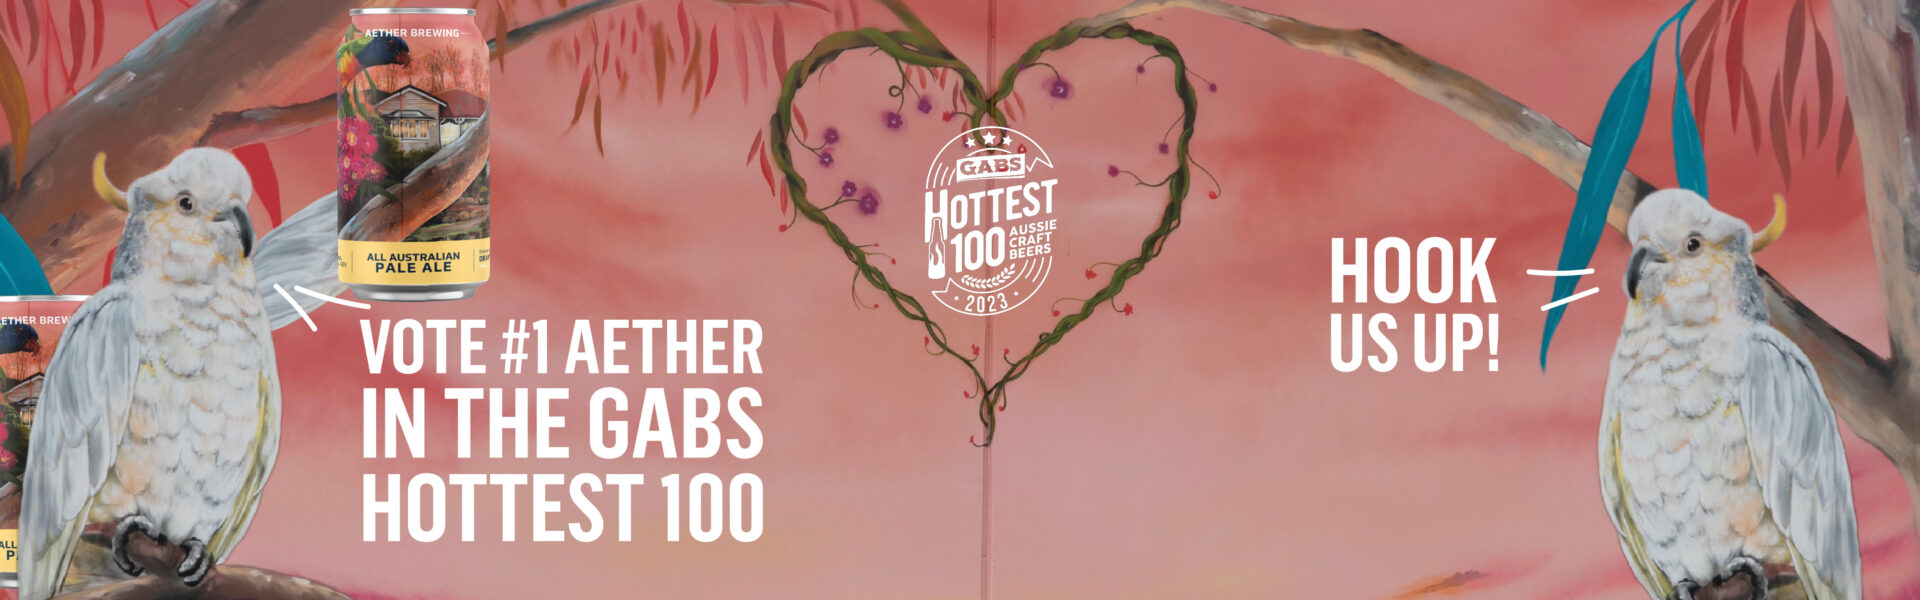 Aether GABS Hottest 100 Hook Us Up Banner